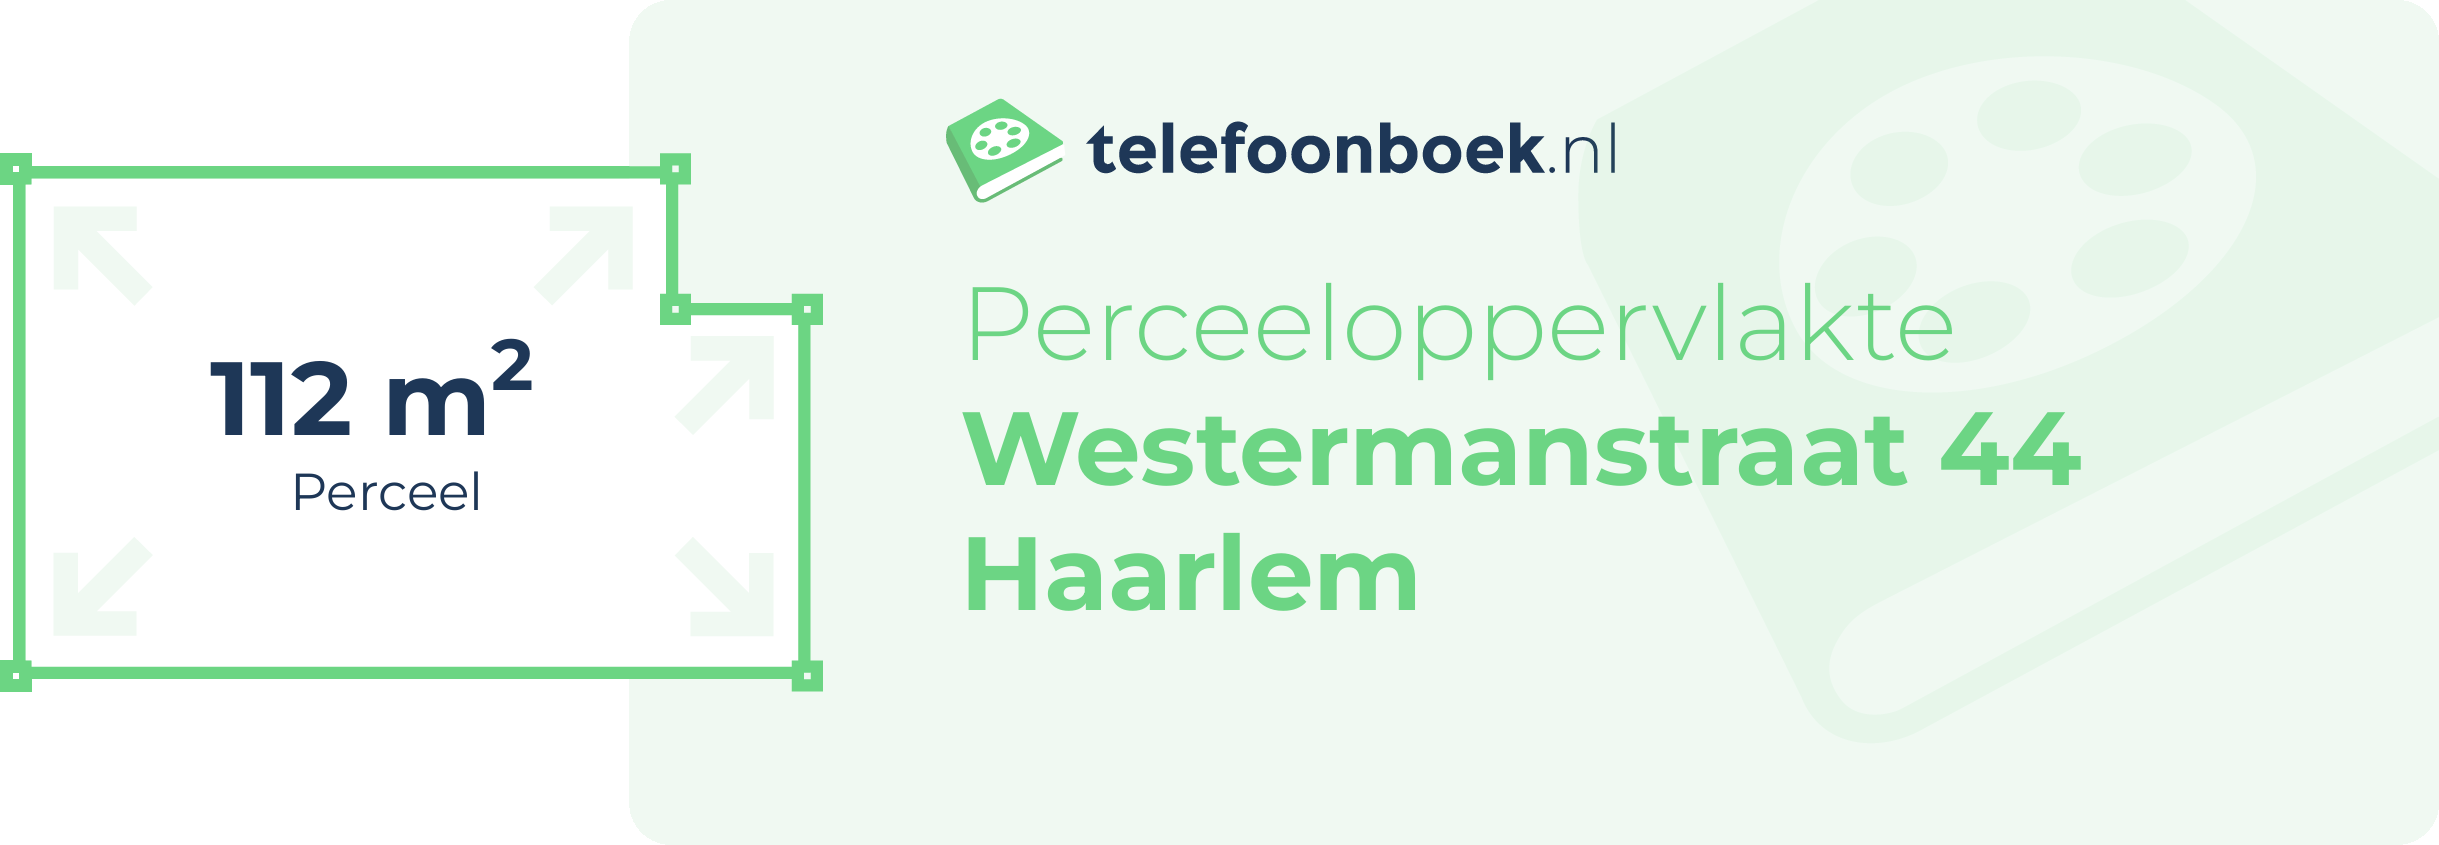 Perceeloppervlakte Westermanstraat 44 Haarlem